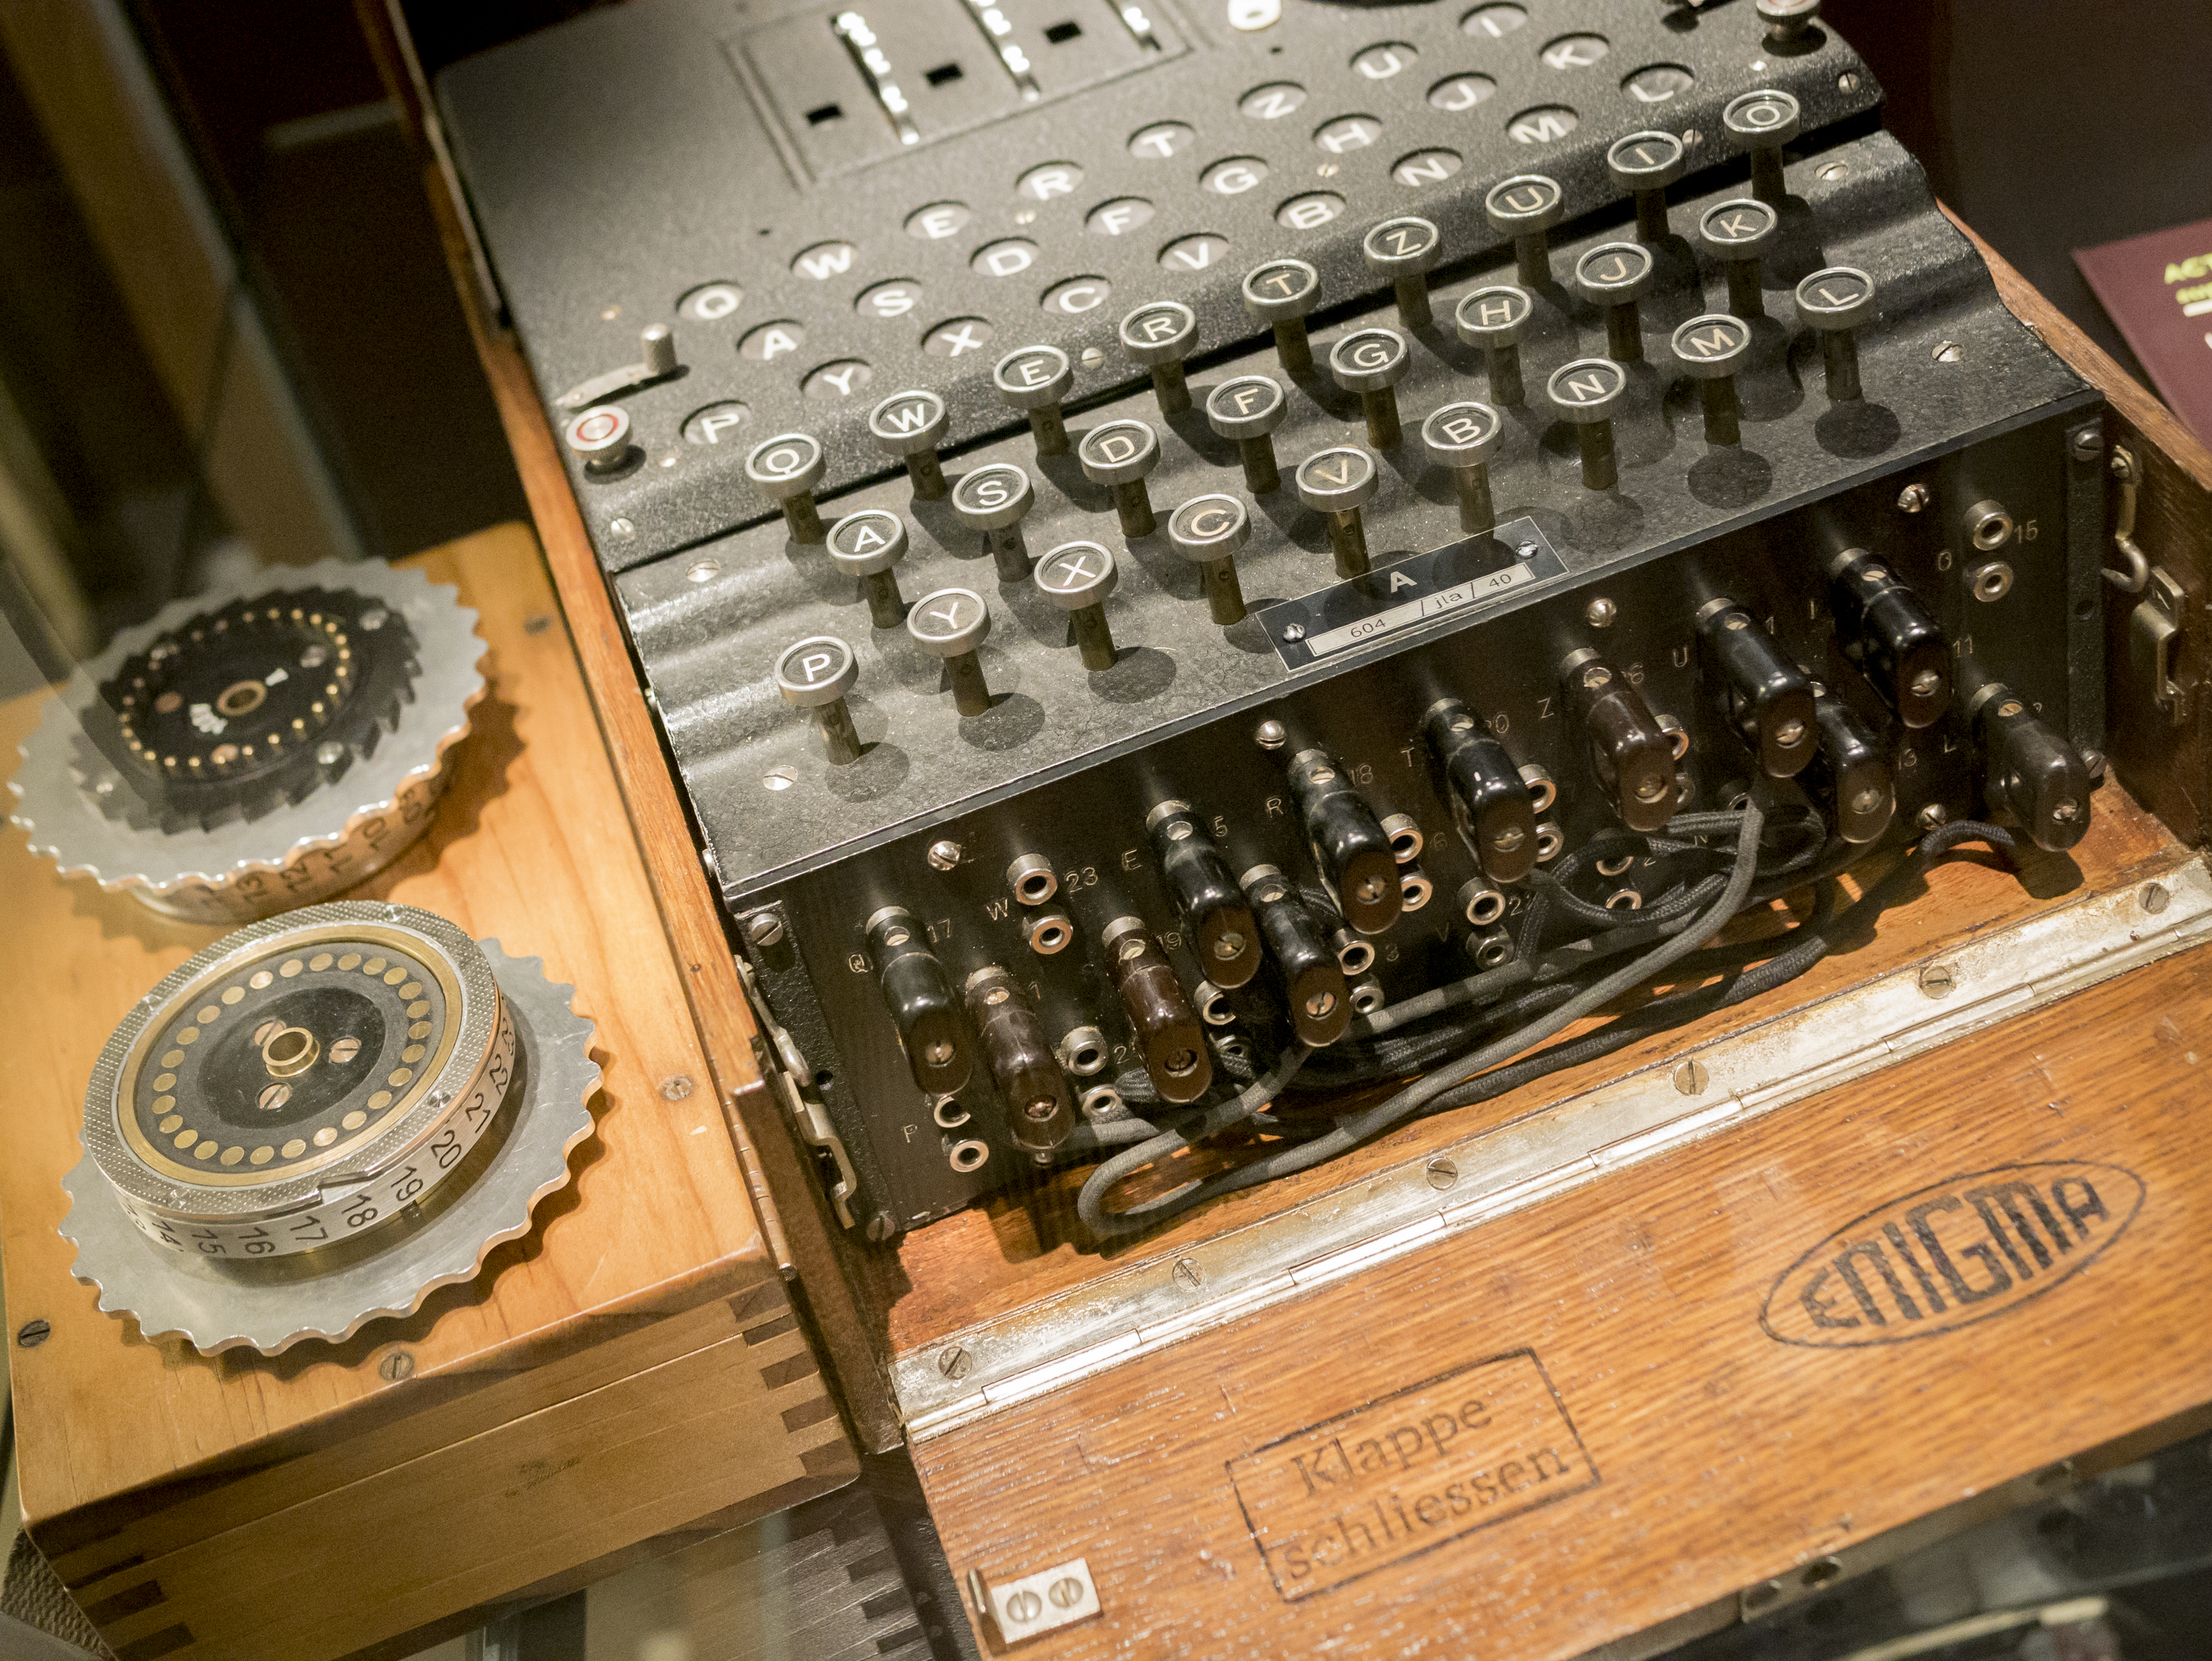 O maşină de criptat „Enigma” folosită de nazişti, descoperită de scafandri germani în Marea Baltică